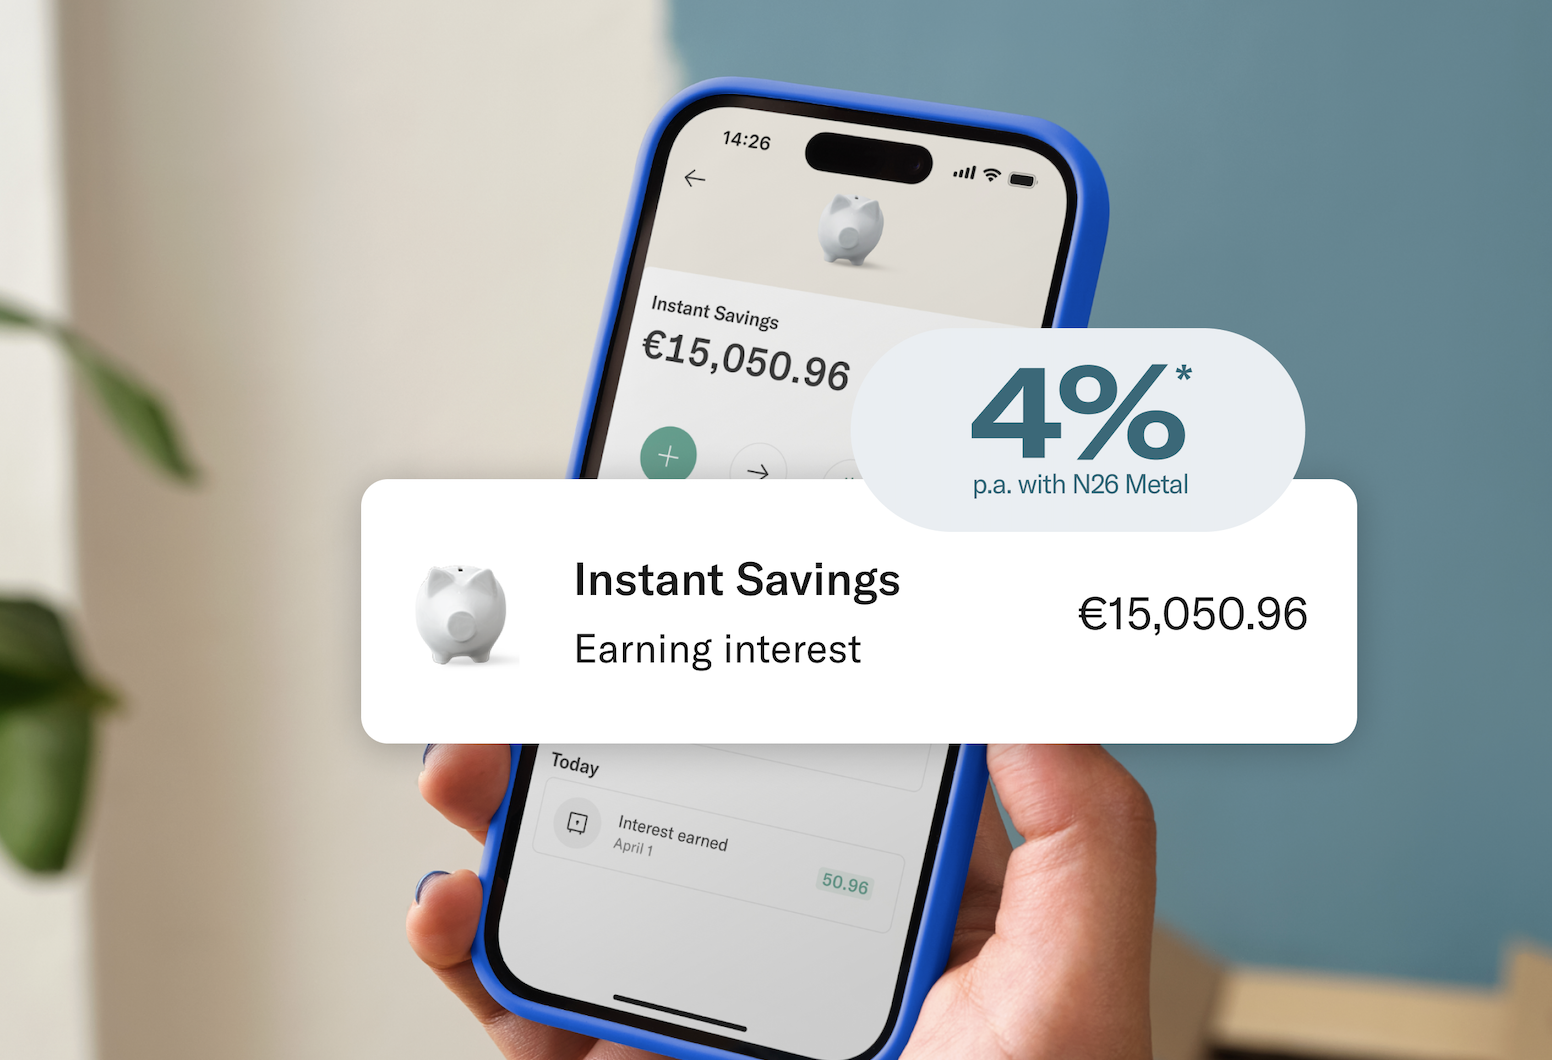 Digitale bank N26 lanceert nieuwe Instant Savings-rekening